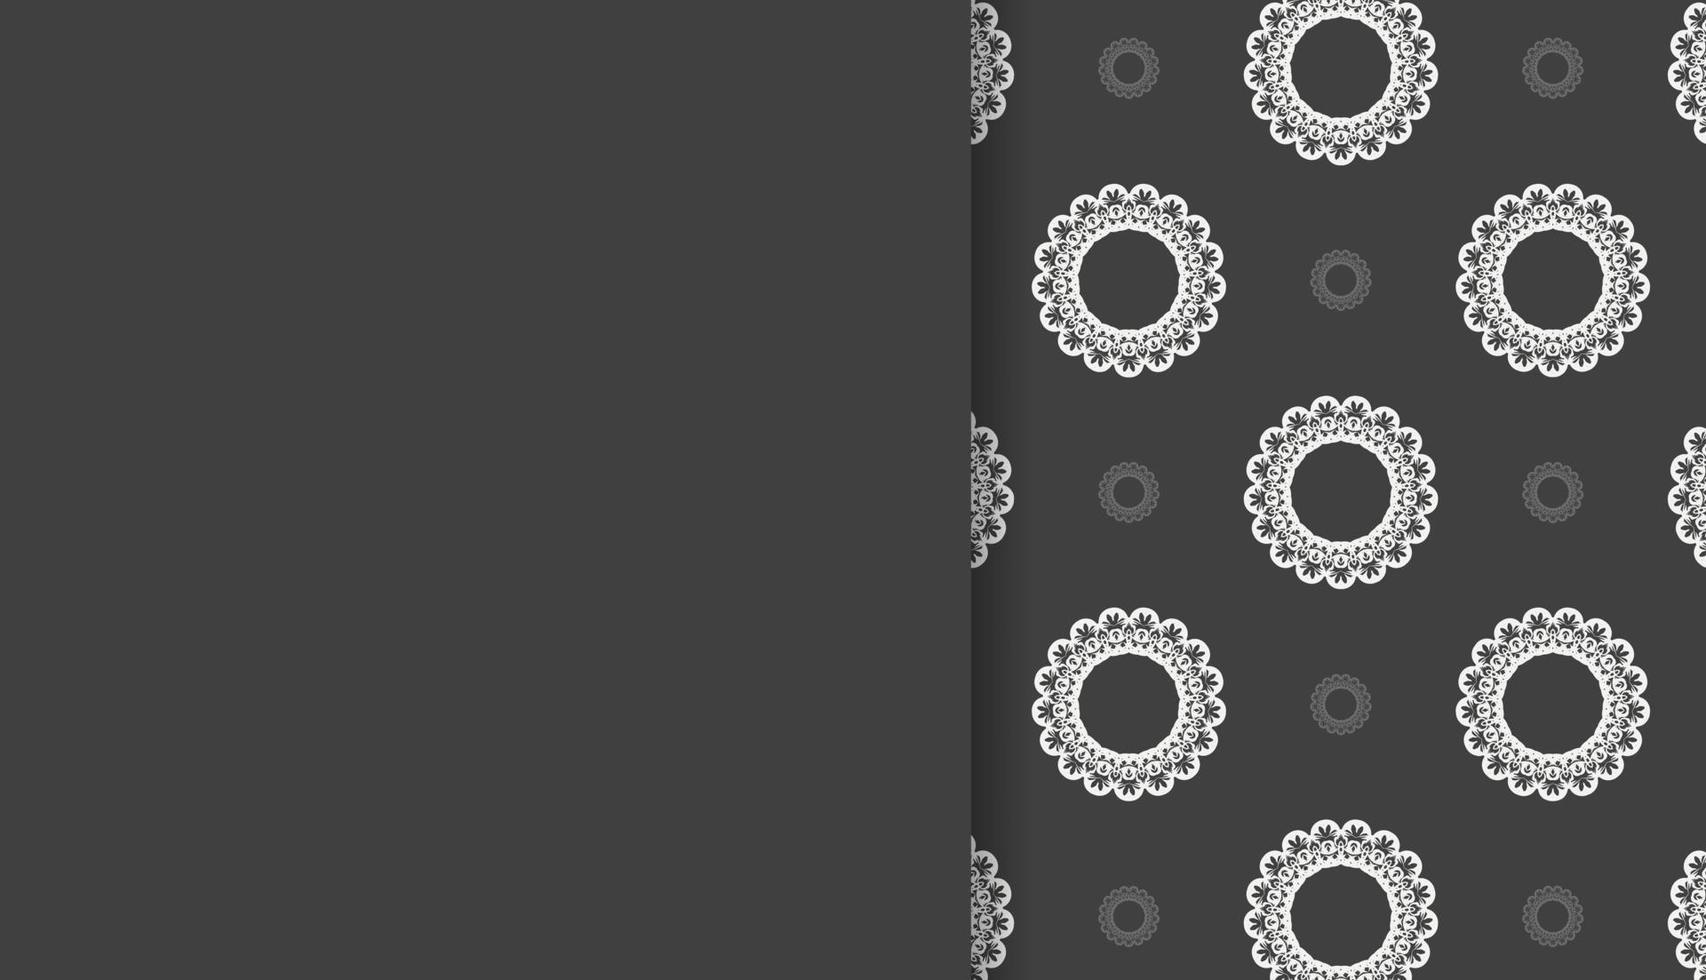 zwart banier met abstract wit ornament voor ontwerp onder logo of tekst vector